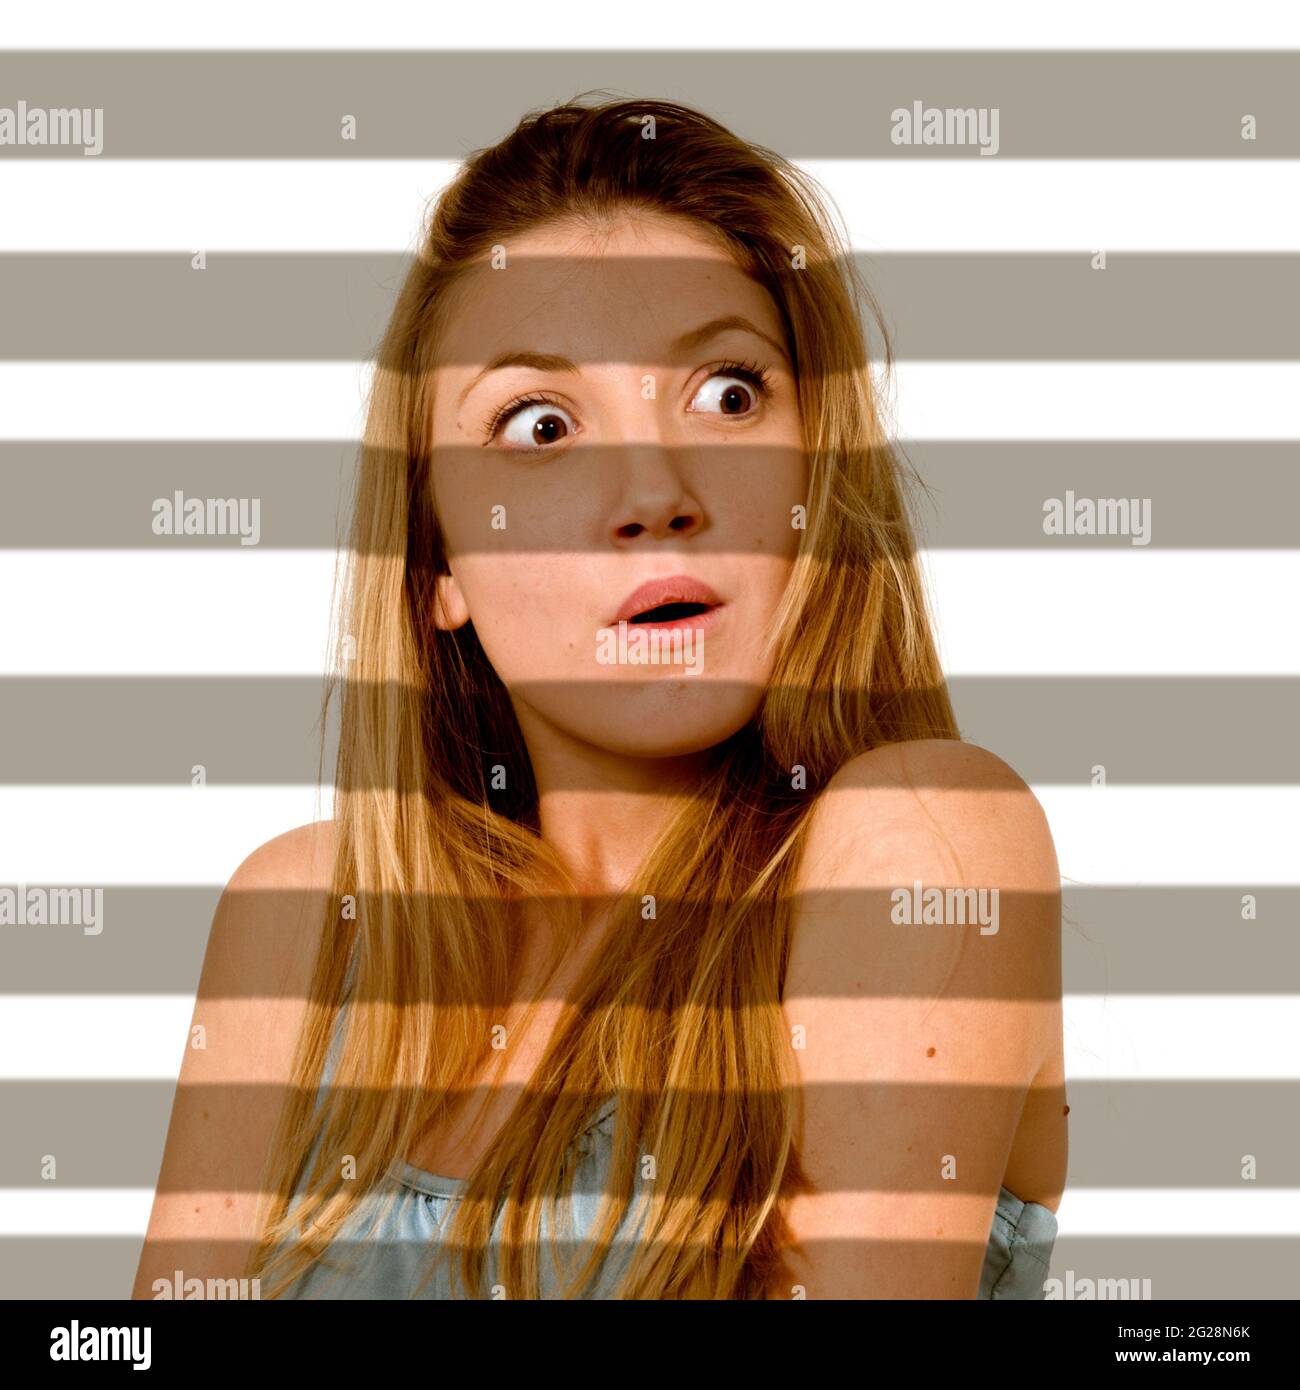 Immagine migliorata digitalmente di una giovane ragazza sorpresa illuminata attraverso le tende dell'otturatore Foto Stock